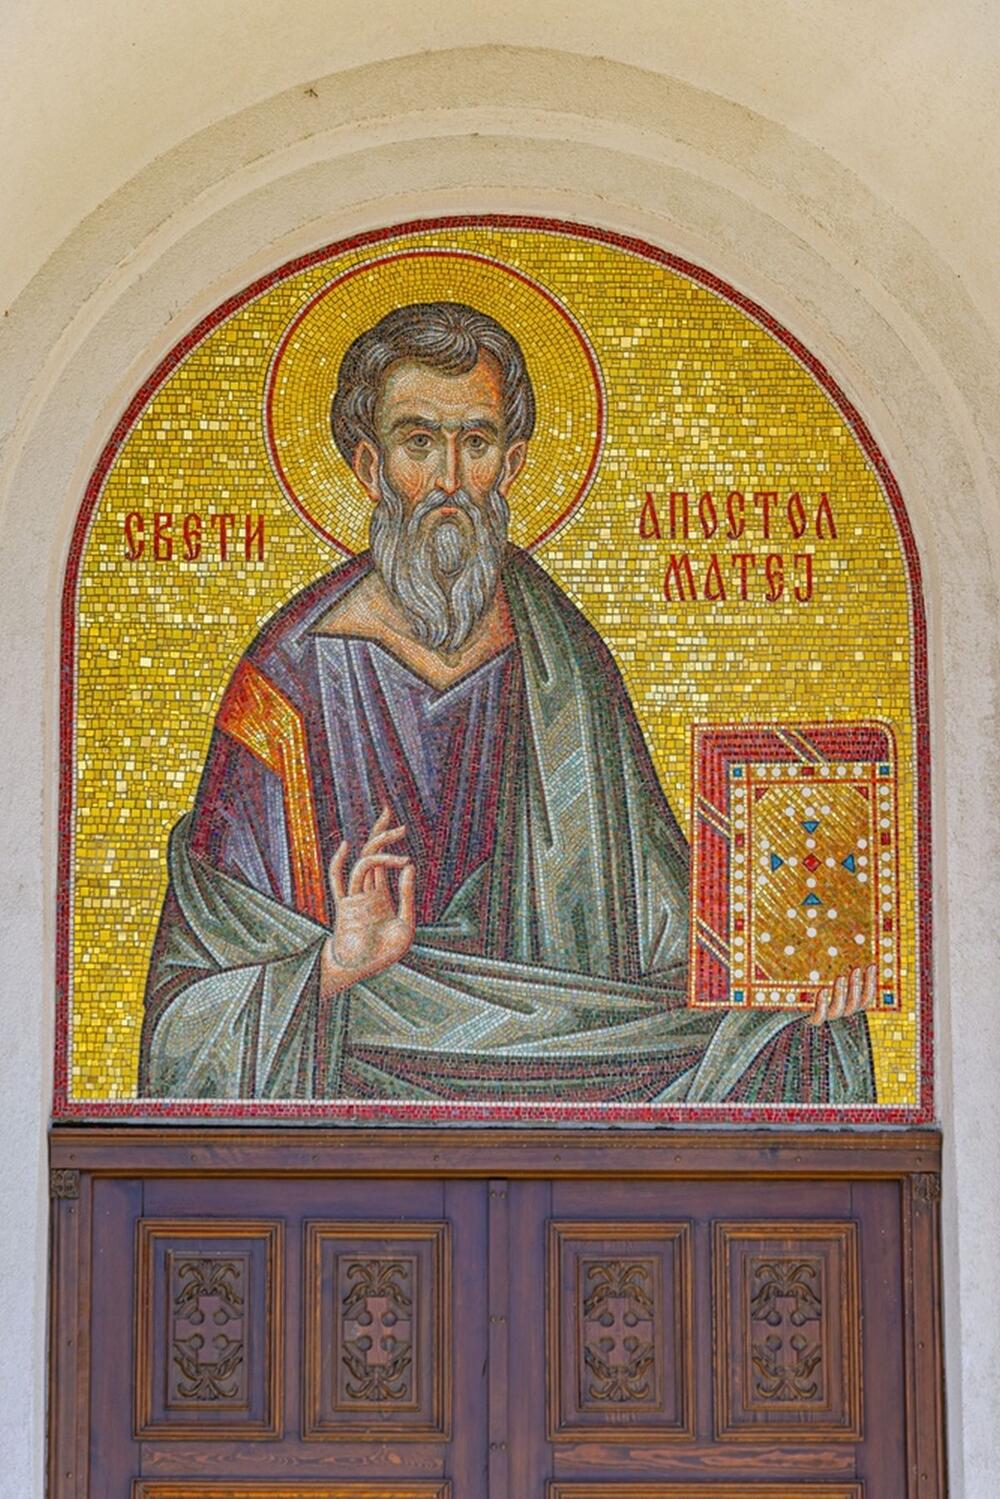 Mozaik Sv. apostola Mateja u Hramu Sv. apostola Mateja u Surčinu